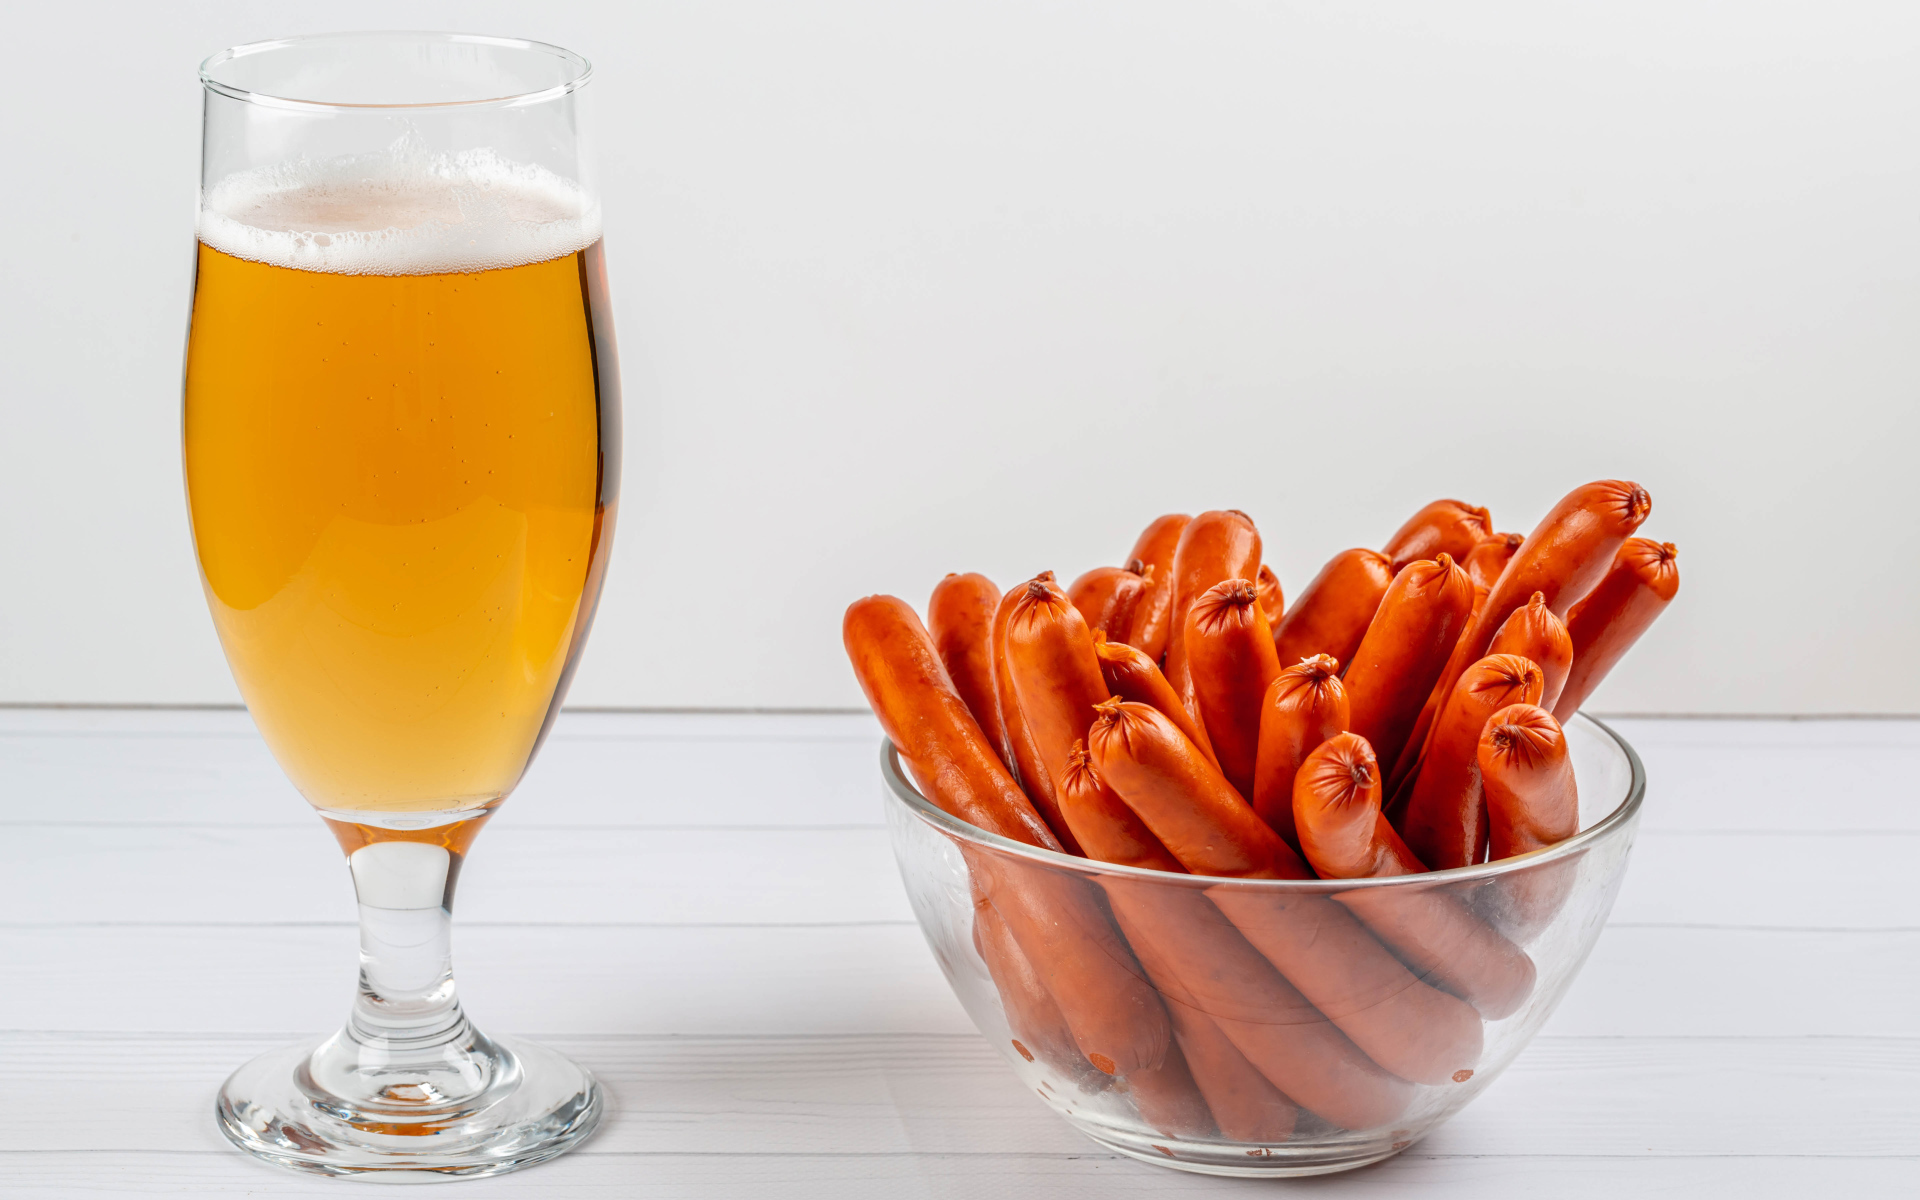 Вкусные сосиски на столе с бокалом пива